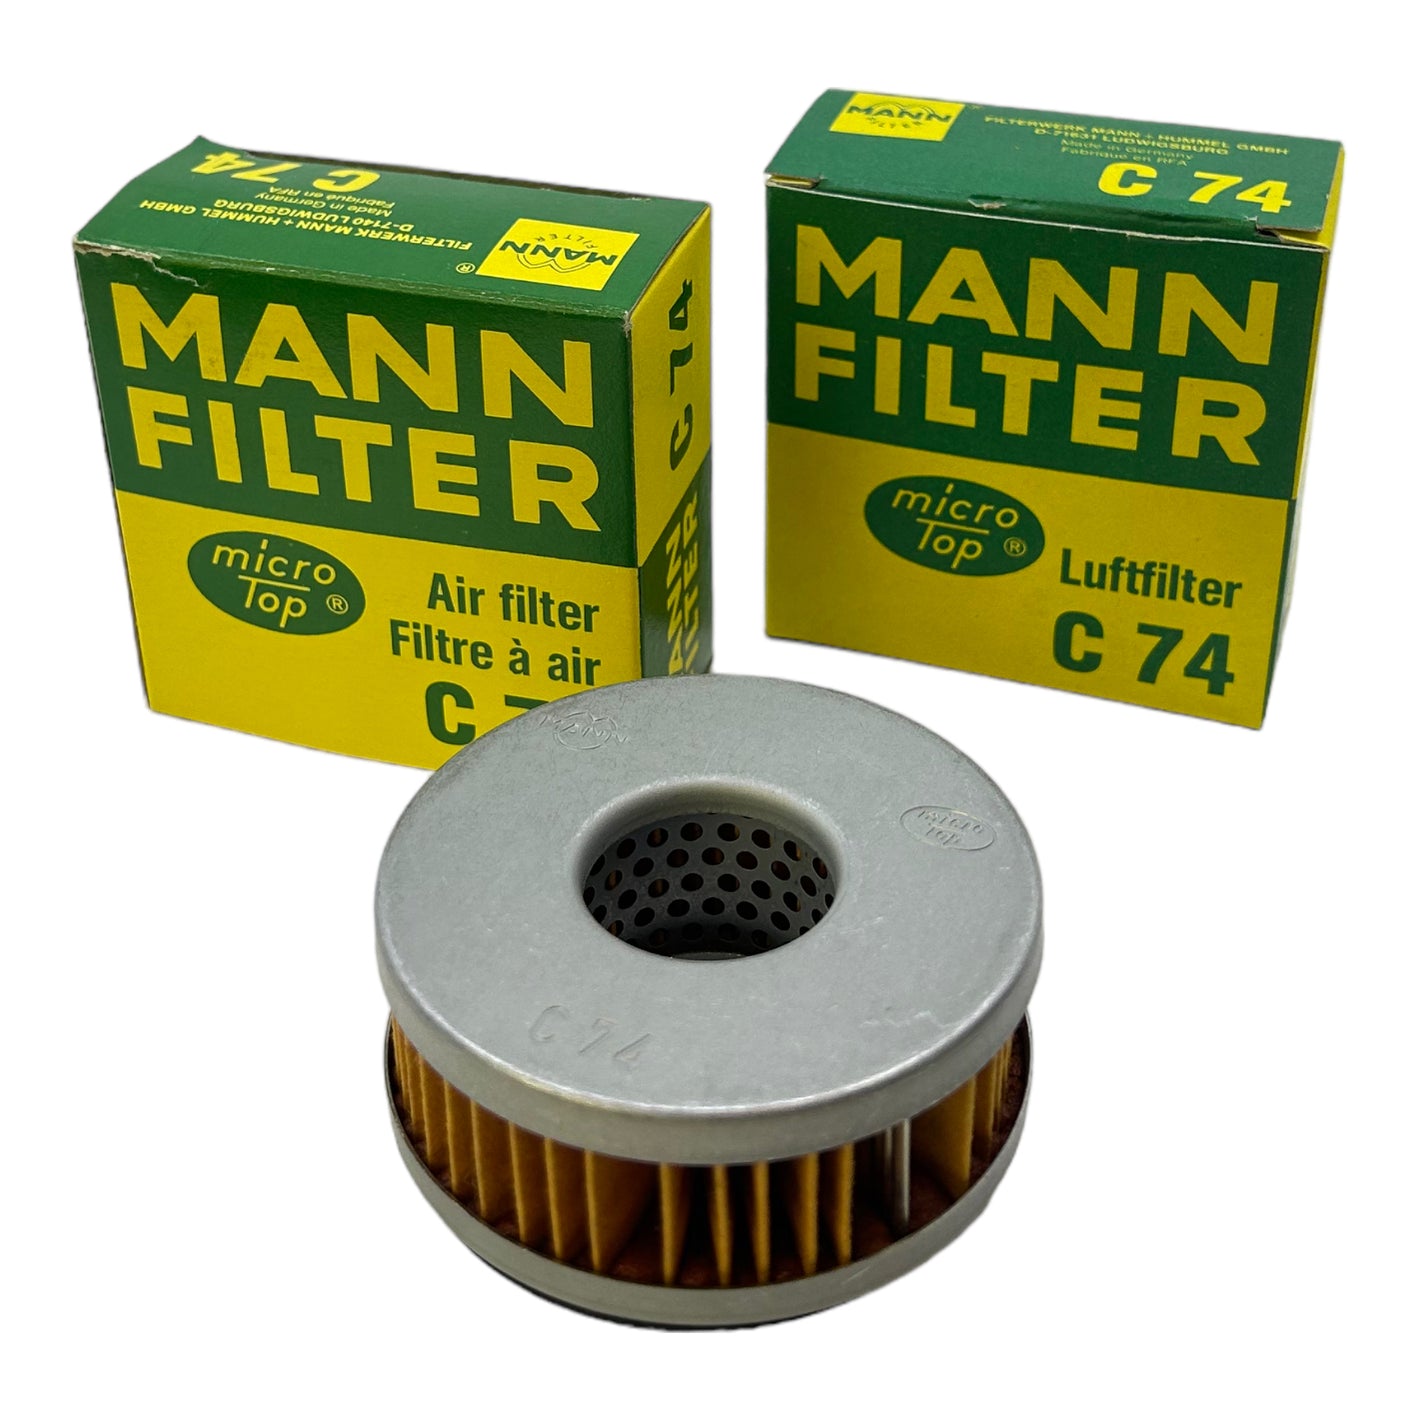 Mann-Filter C74 air filter pack of 2